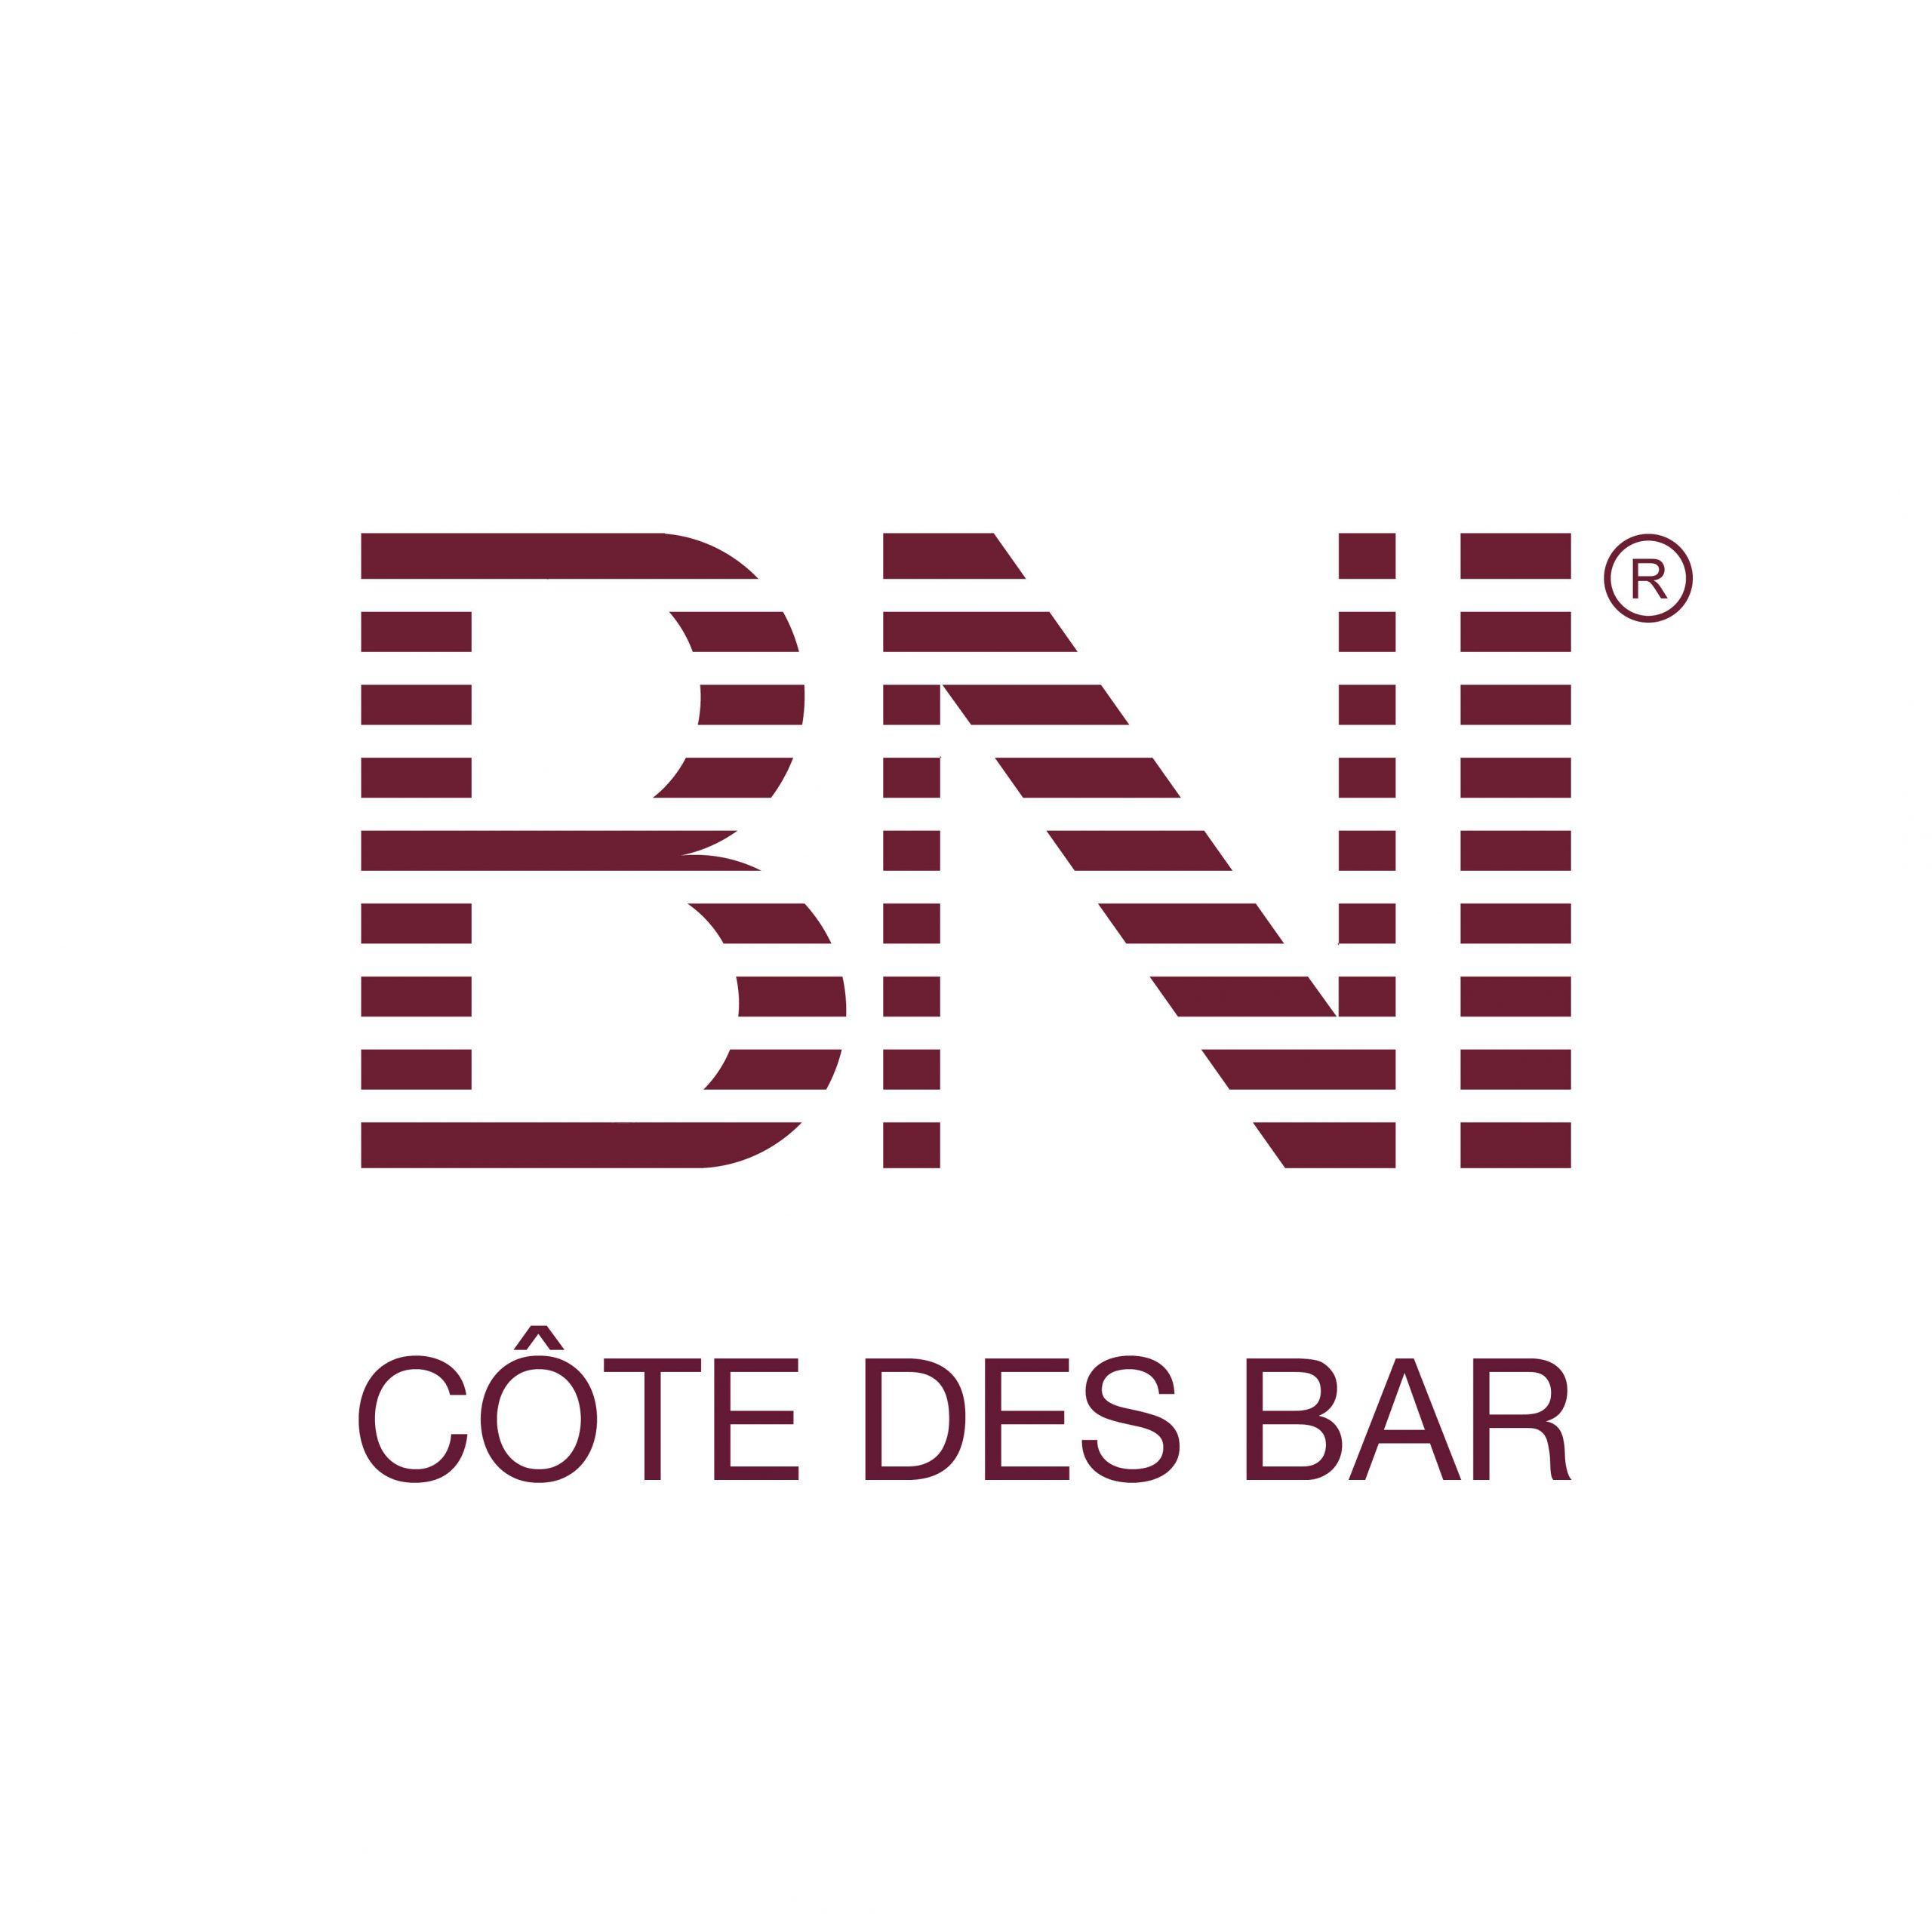 BNI_Cote-des-bars.jpg